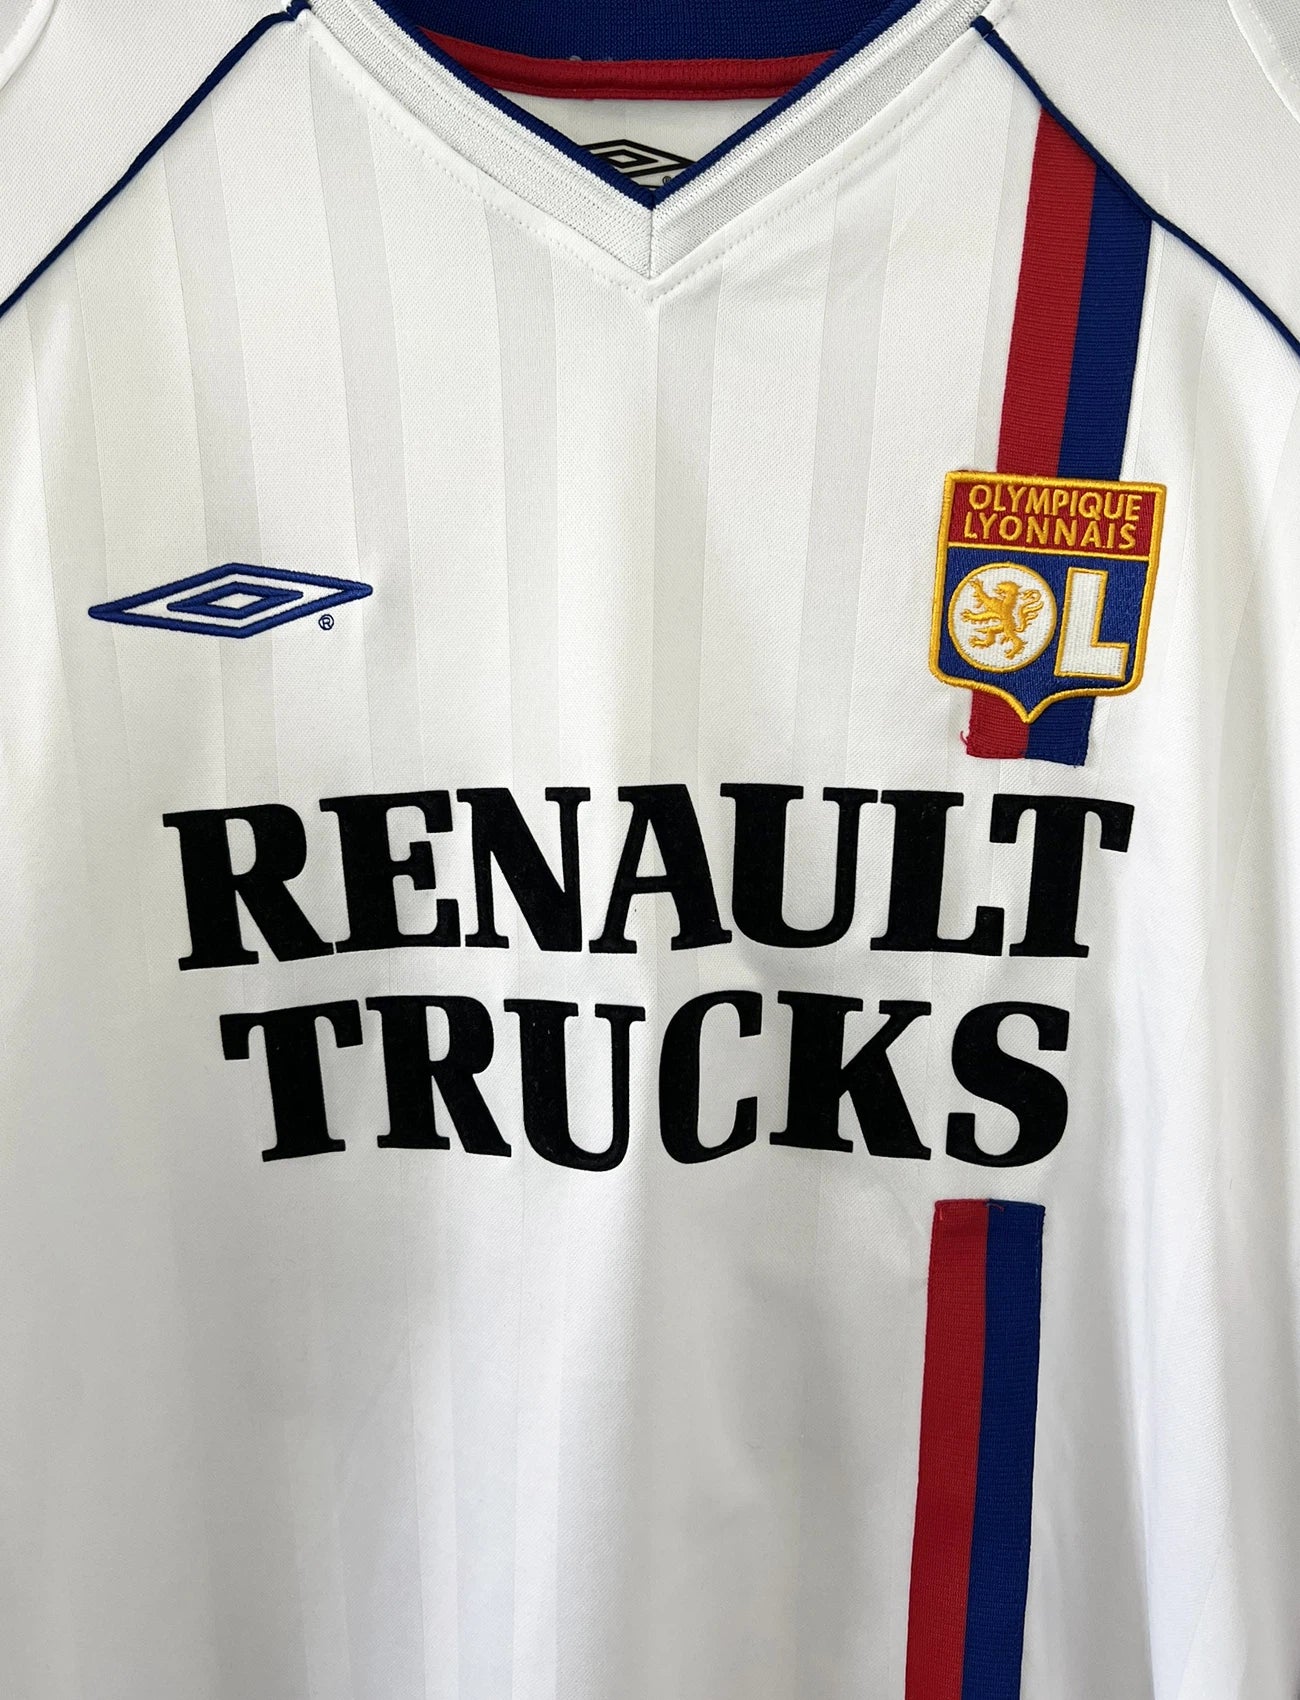 Maillot de foot vintage domicile de l'OL lors de la saison 2003/2004. Le maillot est de couleur blanc et bleu. On peut retrouver l'équipementier Umbro et le sponsor Renault Trucks. Le maillot est floqué du numéro 24 Vikash Dhorasoo. Il s'agit d'un maillot authentique